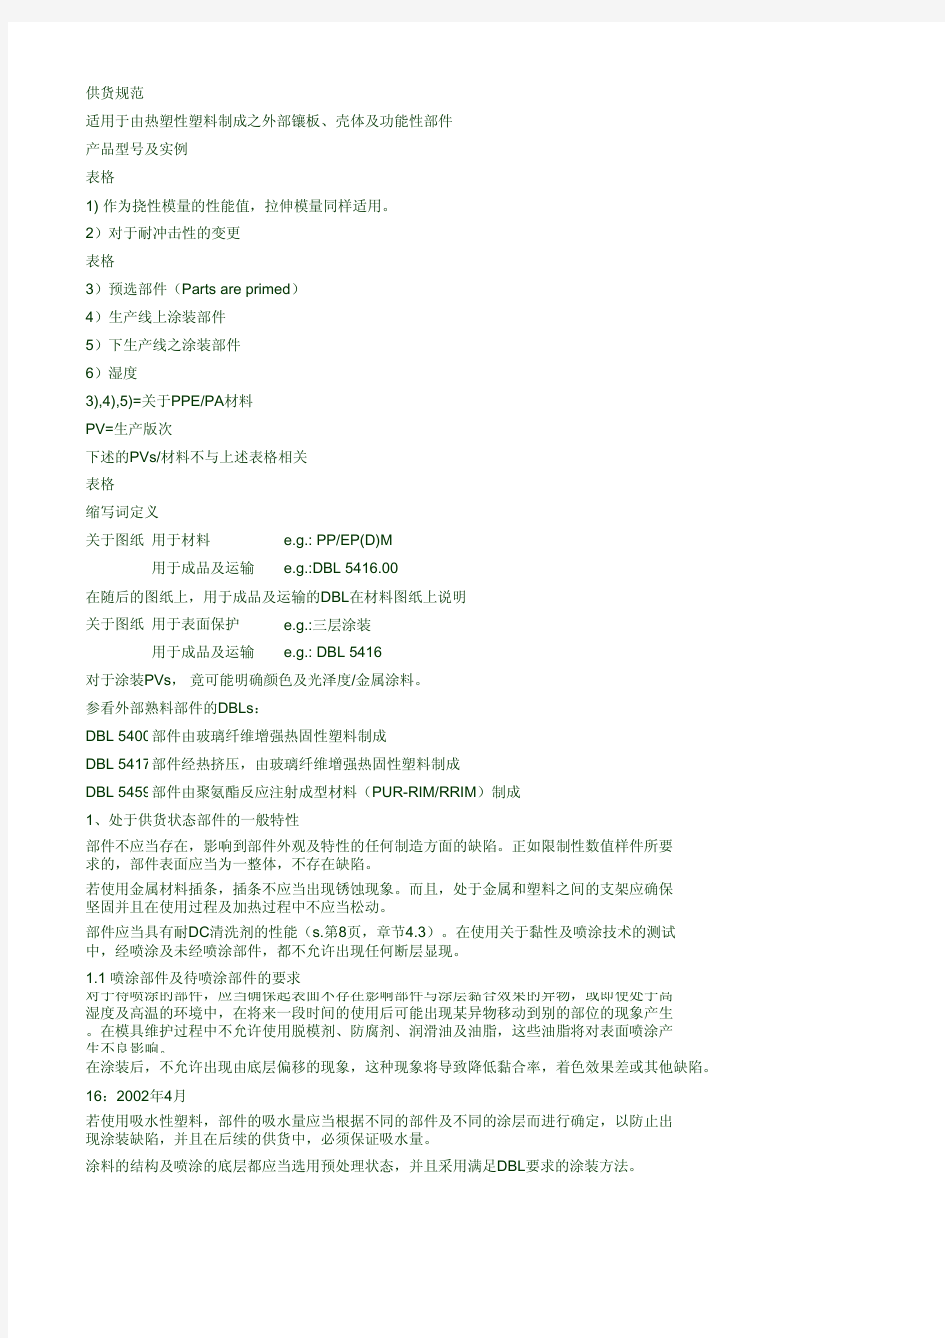 戴姆勒DBL5416材料规范-中文版